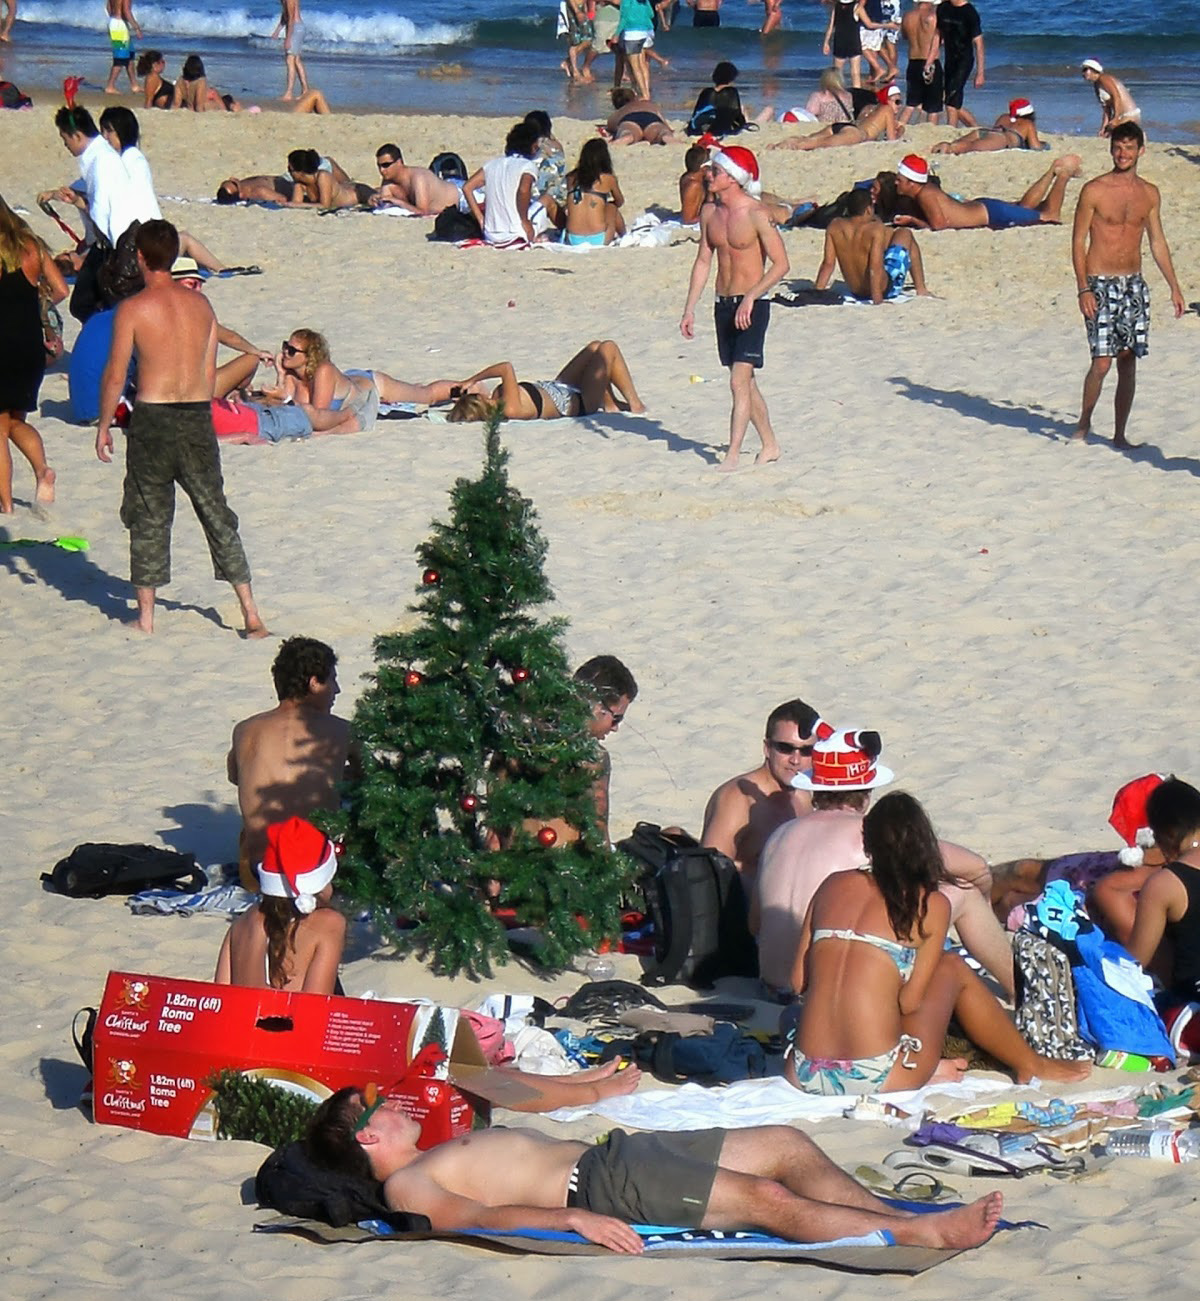 Dove Si Festeggia Il Natale Nel Mondo.Natale In Australia Come Si Festeggia Dall Altra Parte Del Mondo